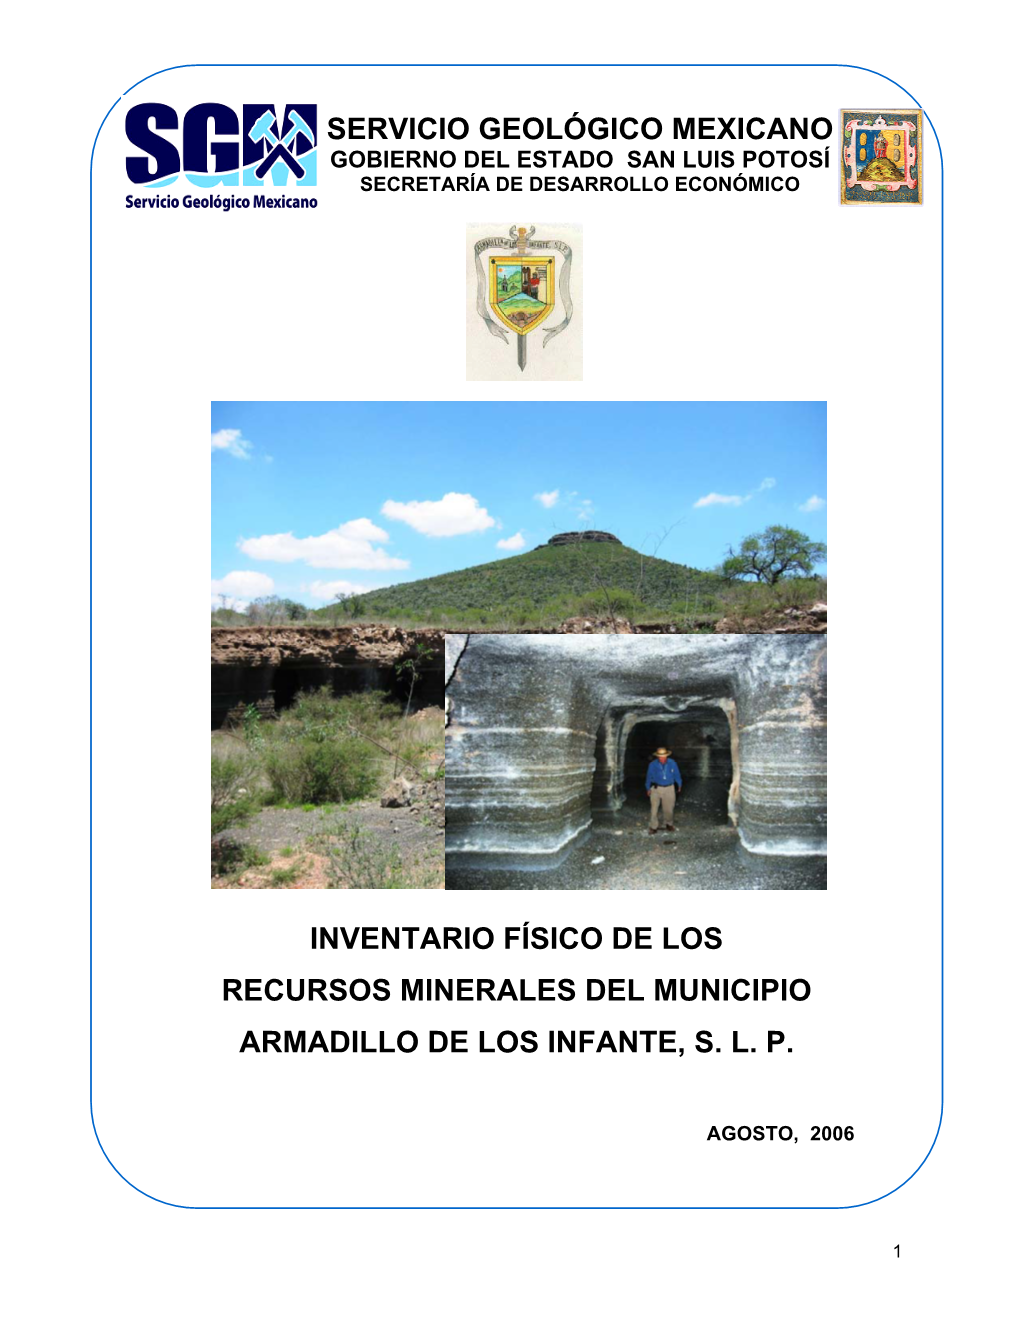 Servicio Geológico Mexicano Recursos Minerales Del Municipio Armadillo De Los Infante, S. L. P. Inventario Físico De